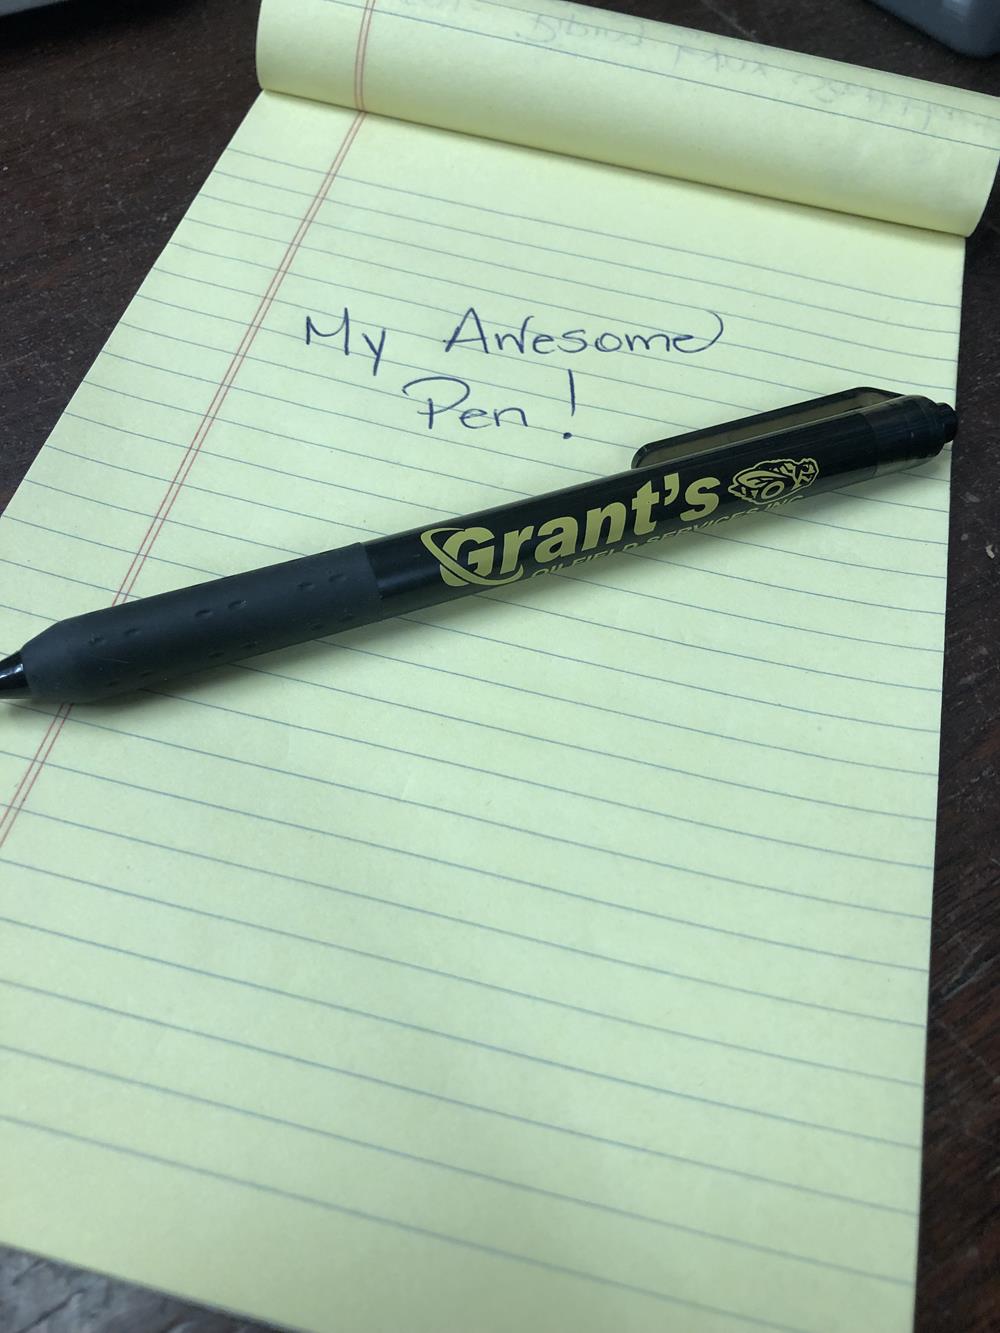 a pen on a notepad